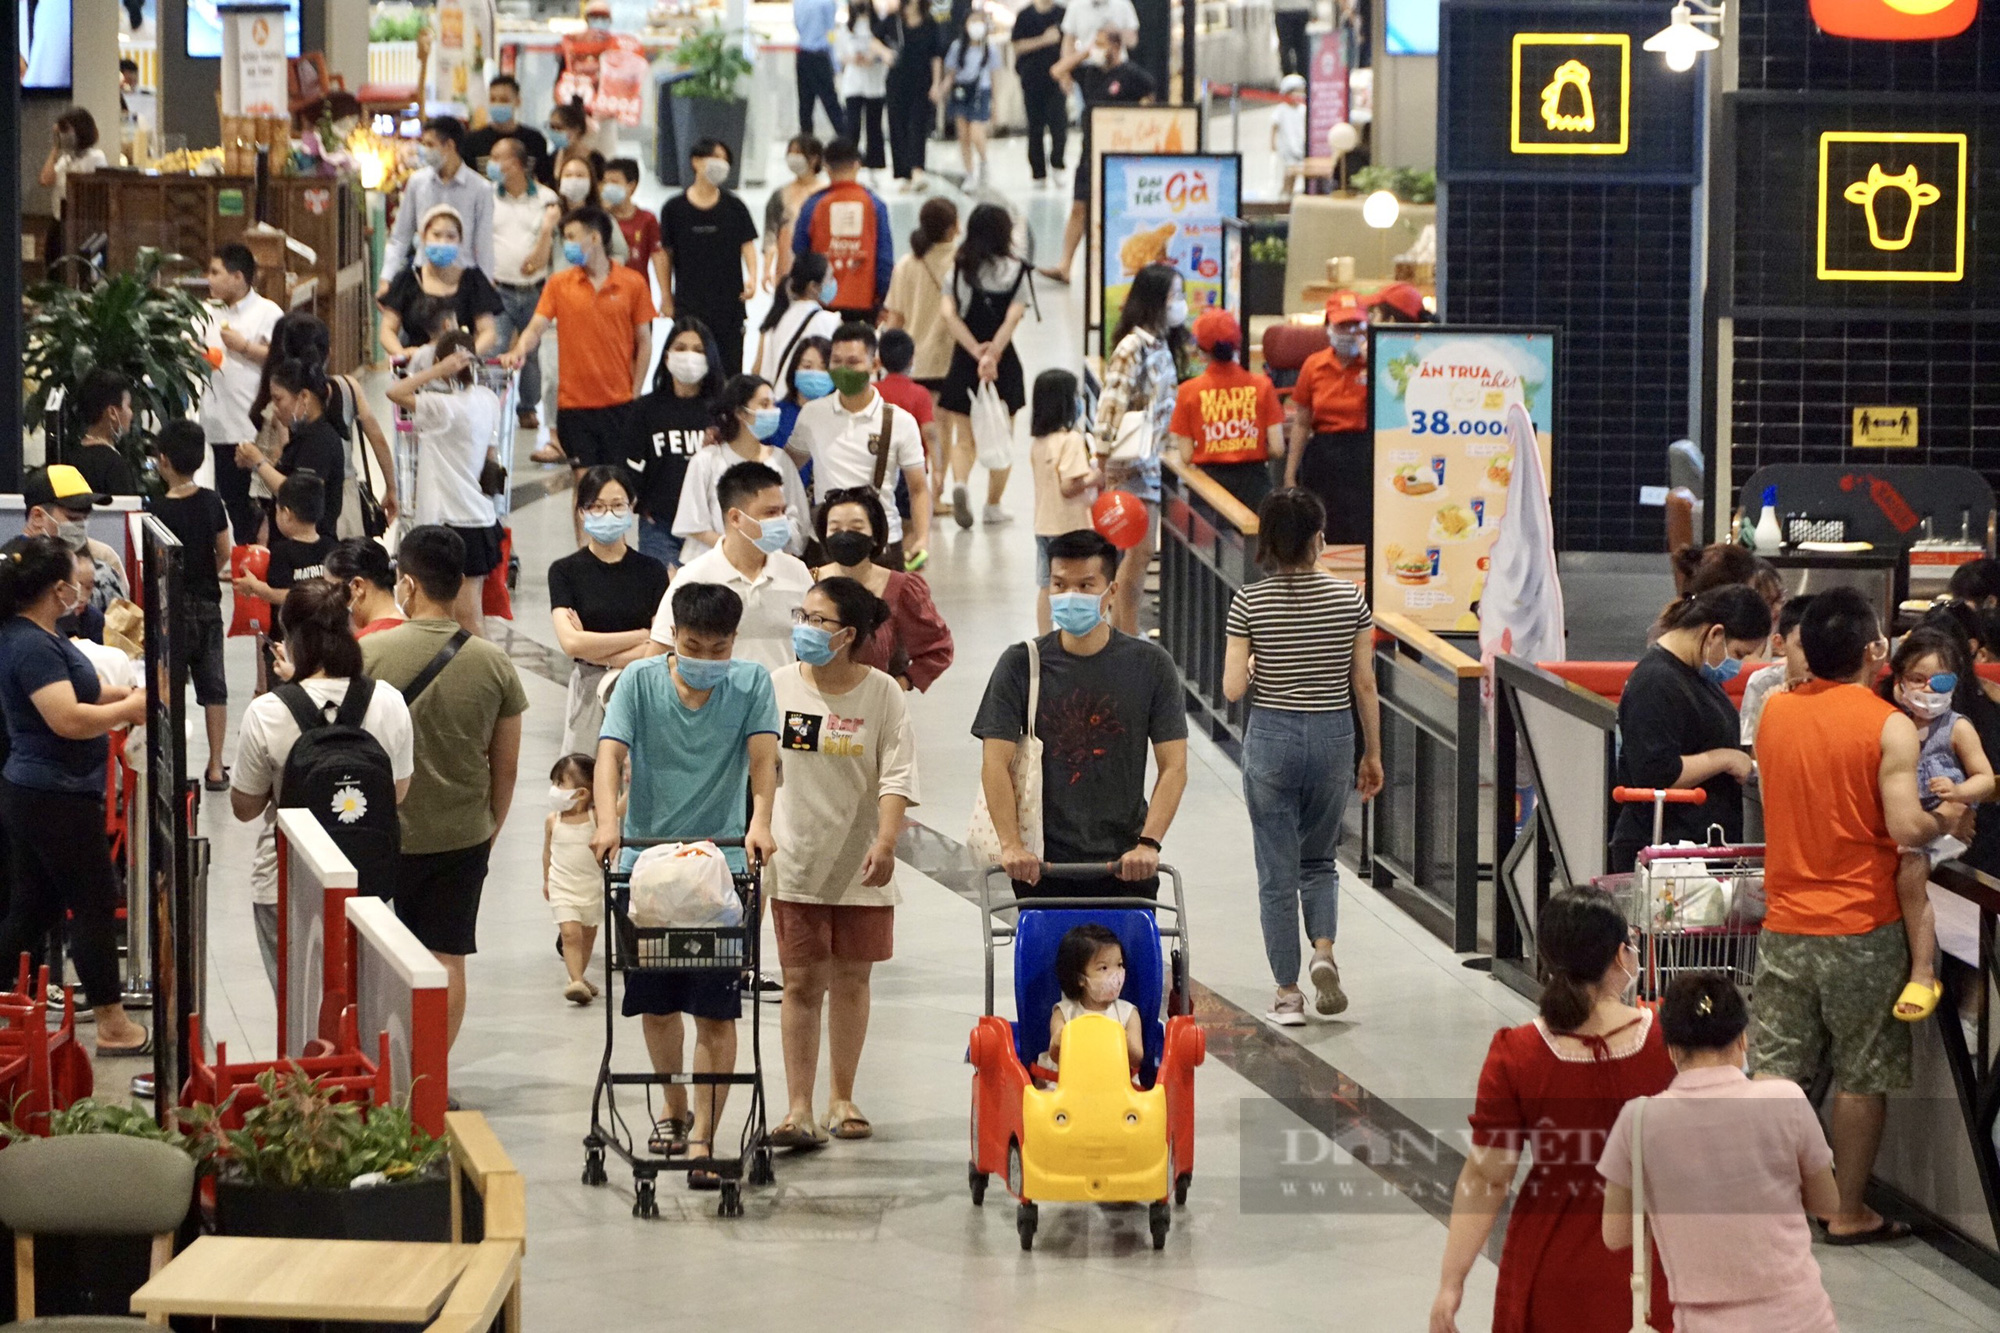 Hà Nội: Trung tâm thương mại, siêu thị vẫn đông nghịt người bất chấp dịch COVID-19 - Ảnh 6.